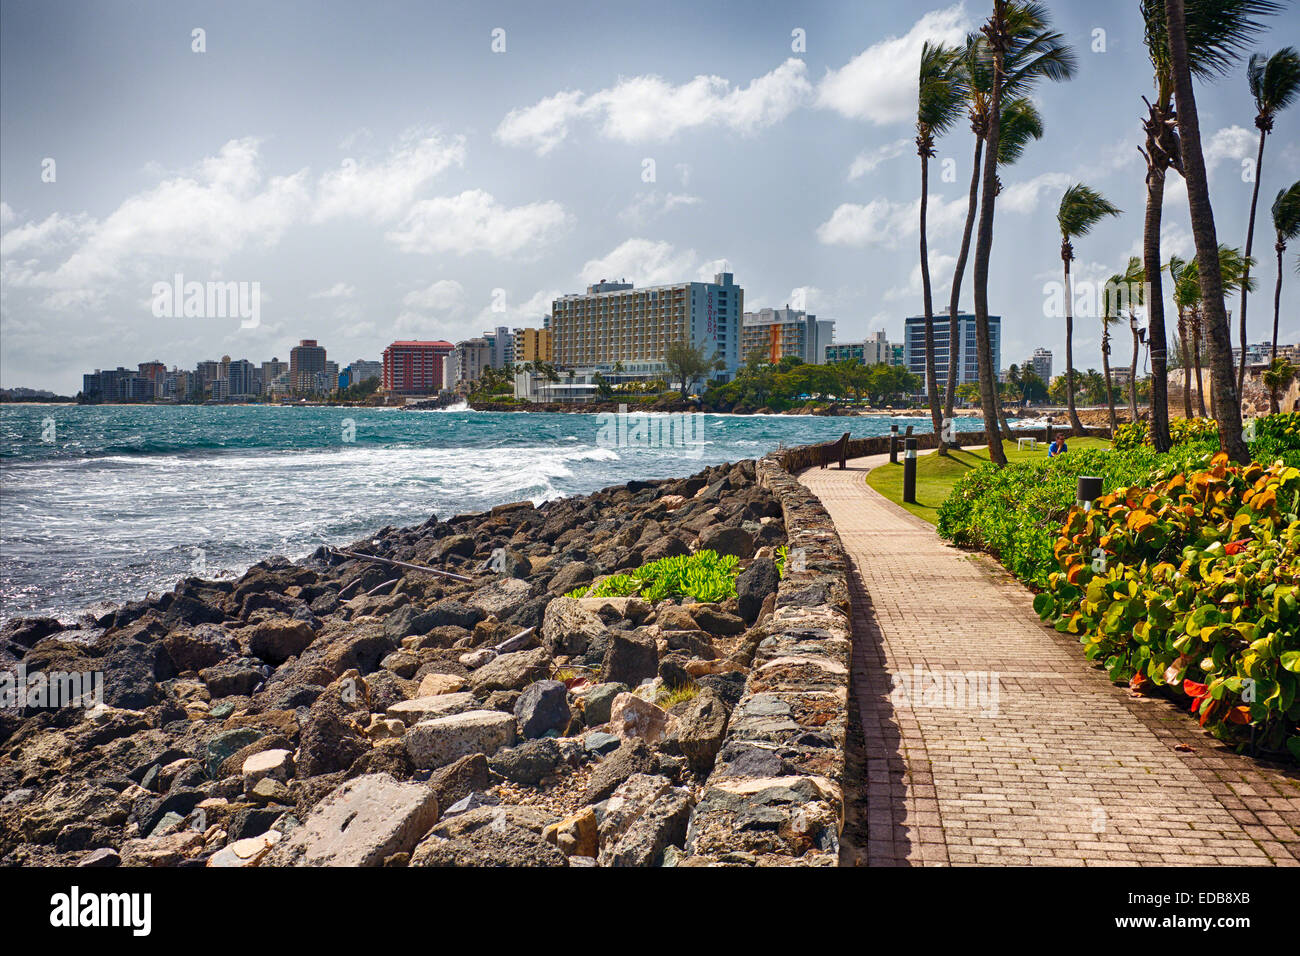 View of Hotel Building s of Condado from Puerta de Tierra, San Juan, Puerto Rico Stock Photo